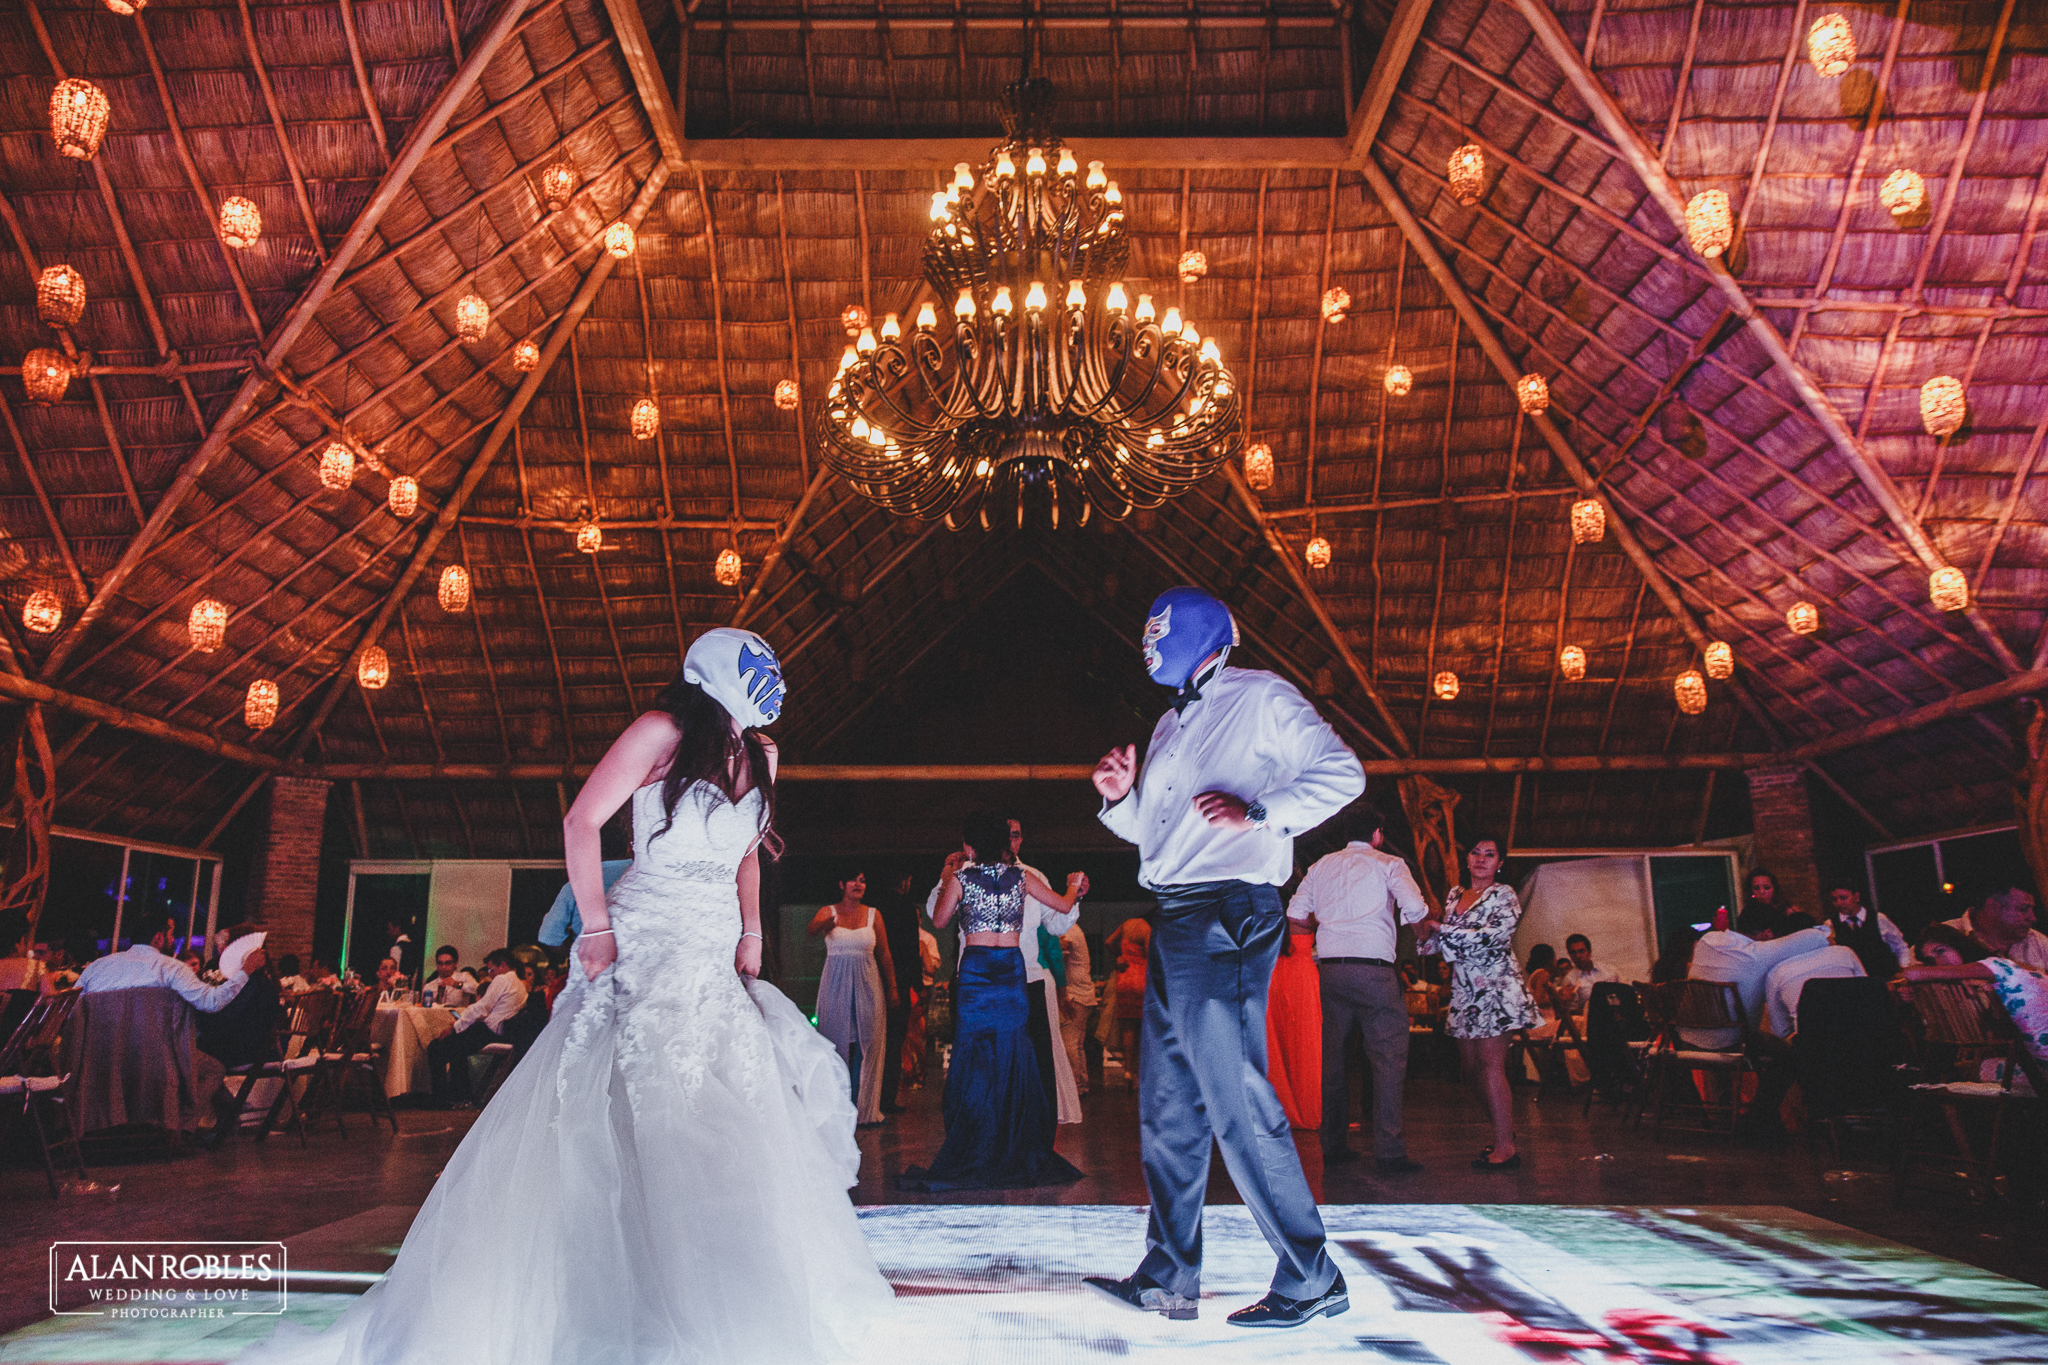 Foto divertida de novios con mascara de luchador en boda en Hacienda Los Pozos.El mejor fotografo de Bodas en Guadalajara Alan Robles.